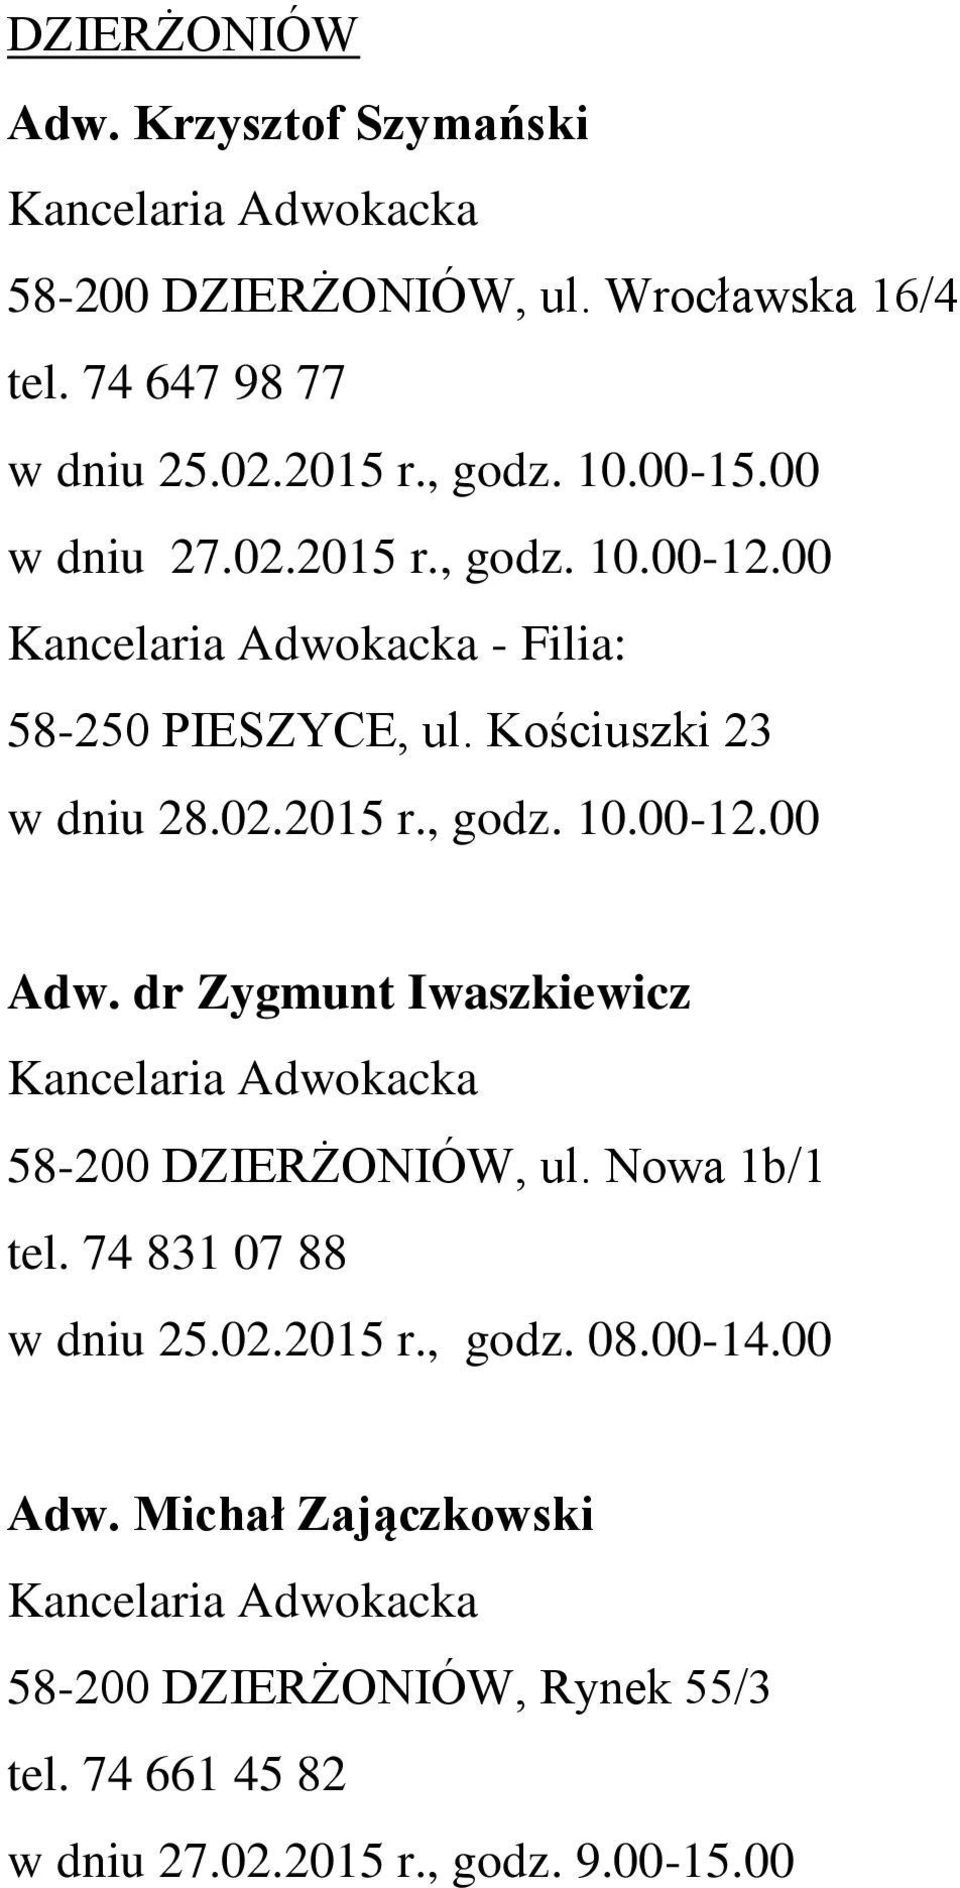 dr Zygmunt Iwaszkiewicz 58-200 DZIERŻONIÓW, ul. Nowa 1b/1 tel. 74 831 07 88 w dniu 25.02.2015 r., godz. 08.00-14.00 Adw.